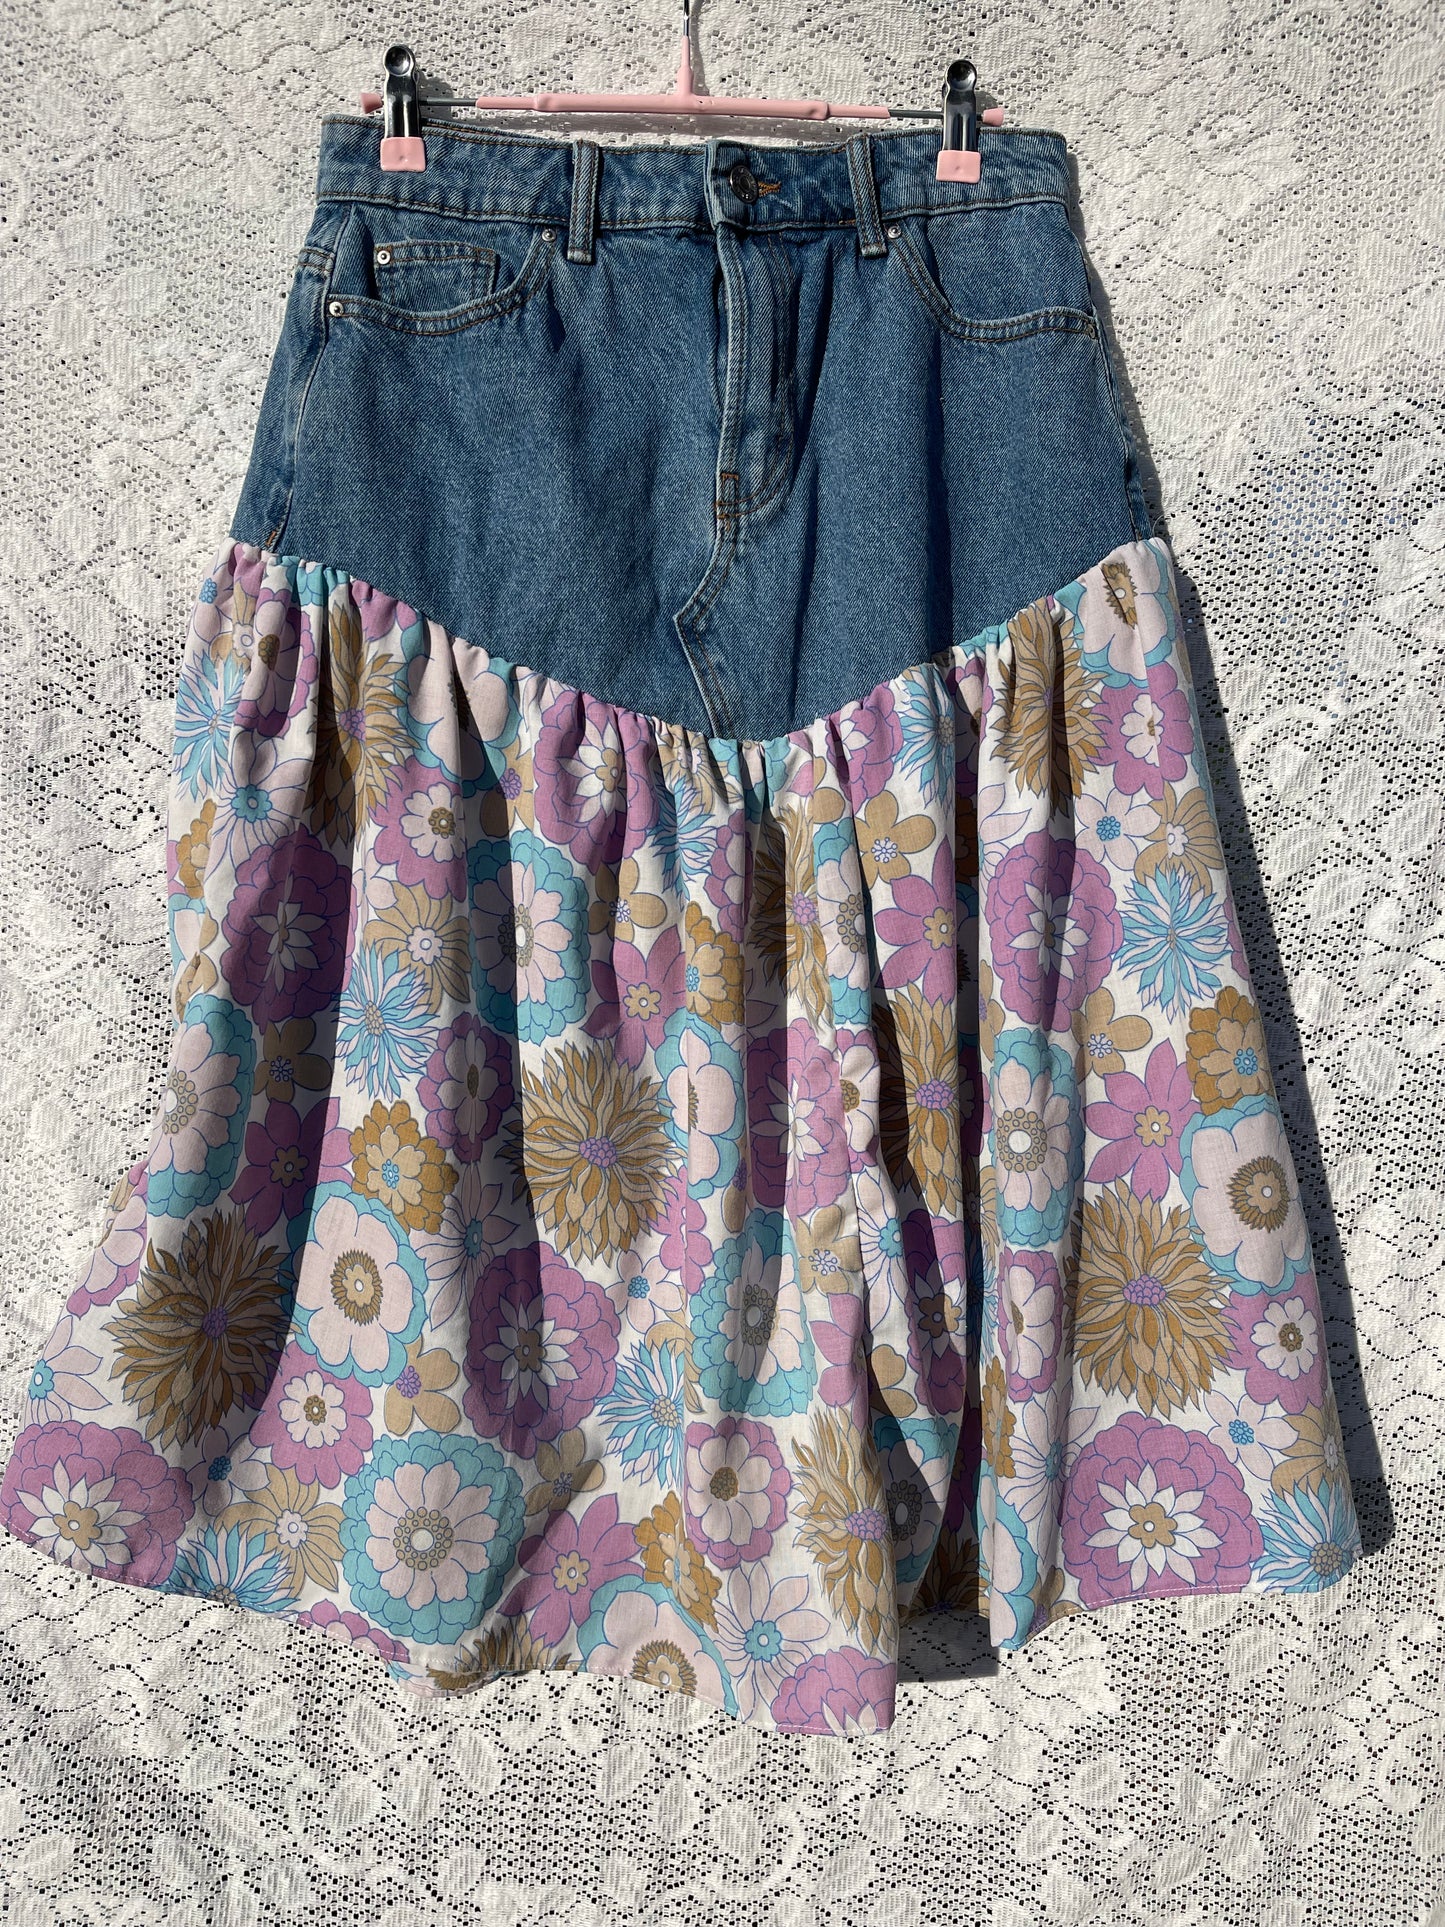 Vintage floral and denim skirt